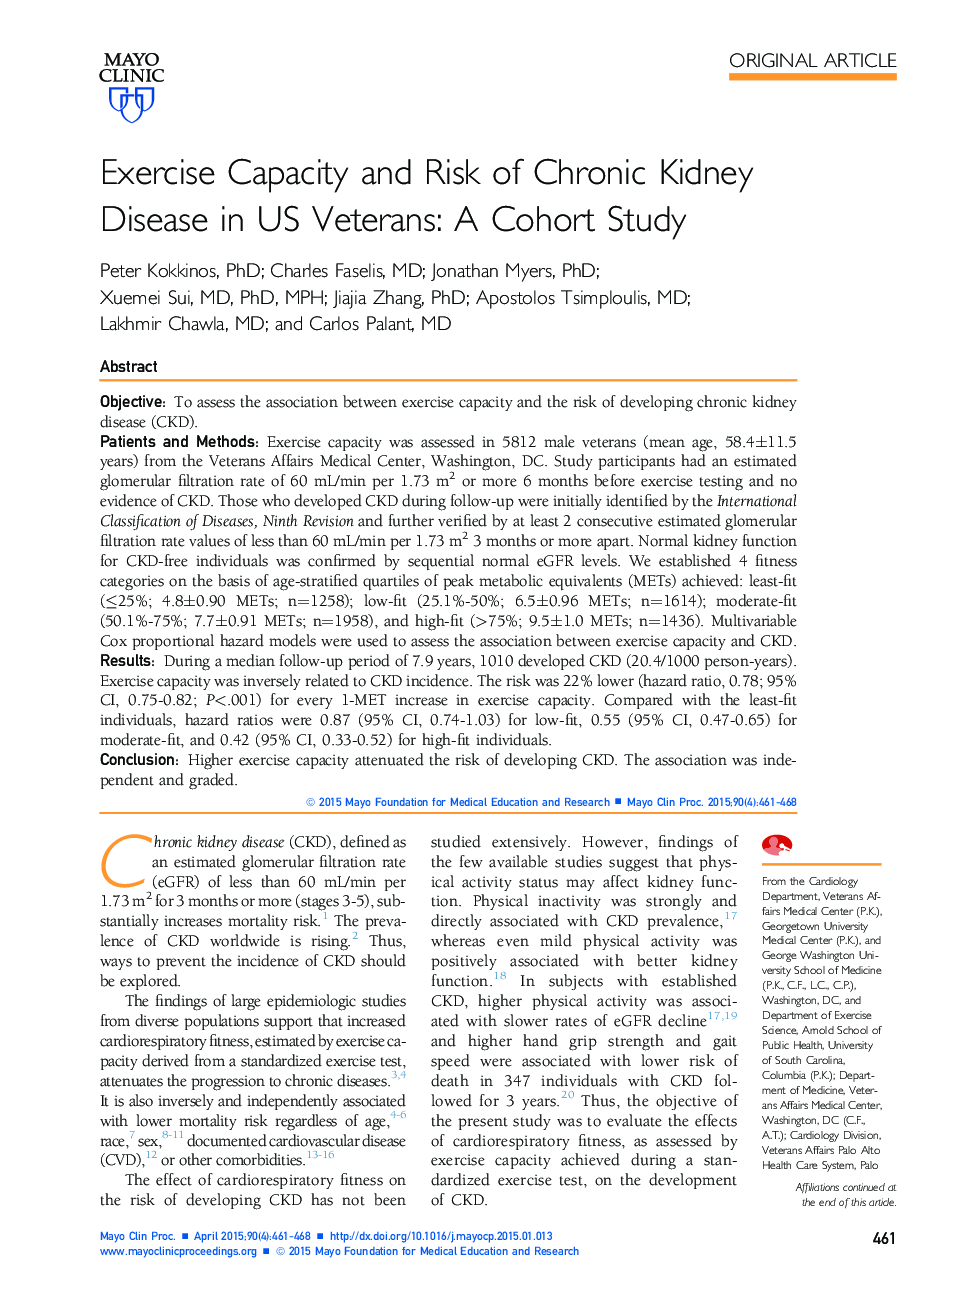 ظرفیت ورزش و خطر بیماری مزمن کلیه در جانبازان آمریکایی: مطالعه کوهورت 